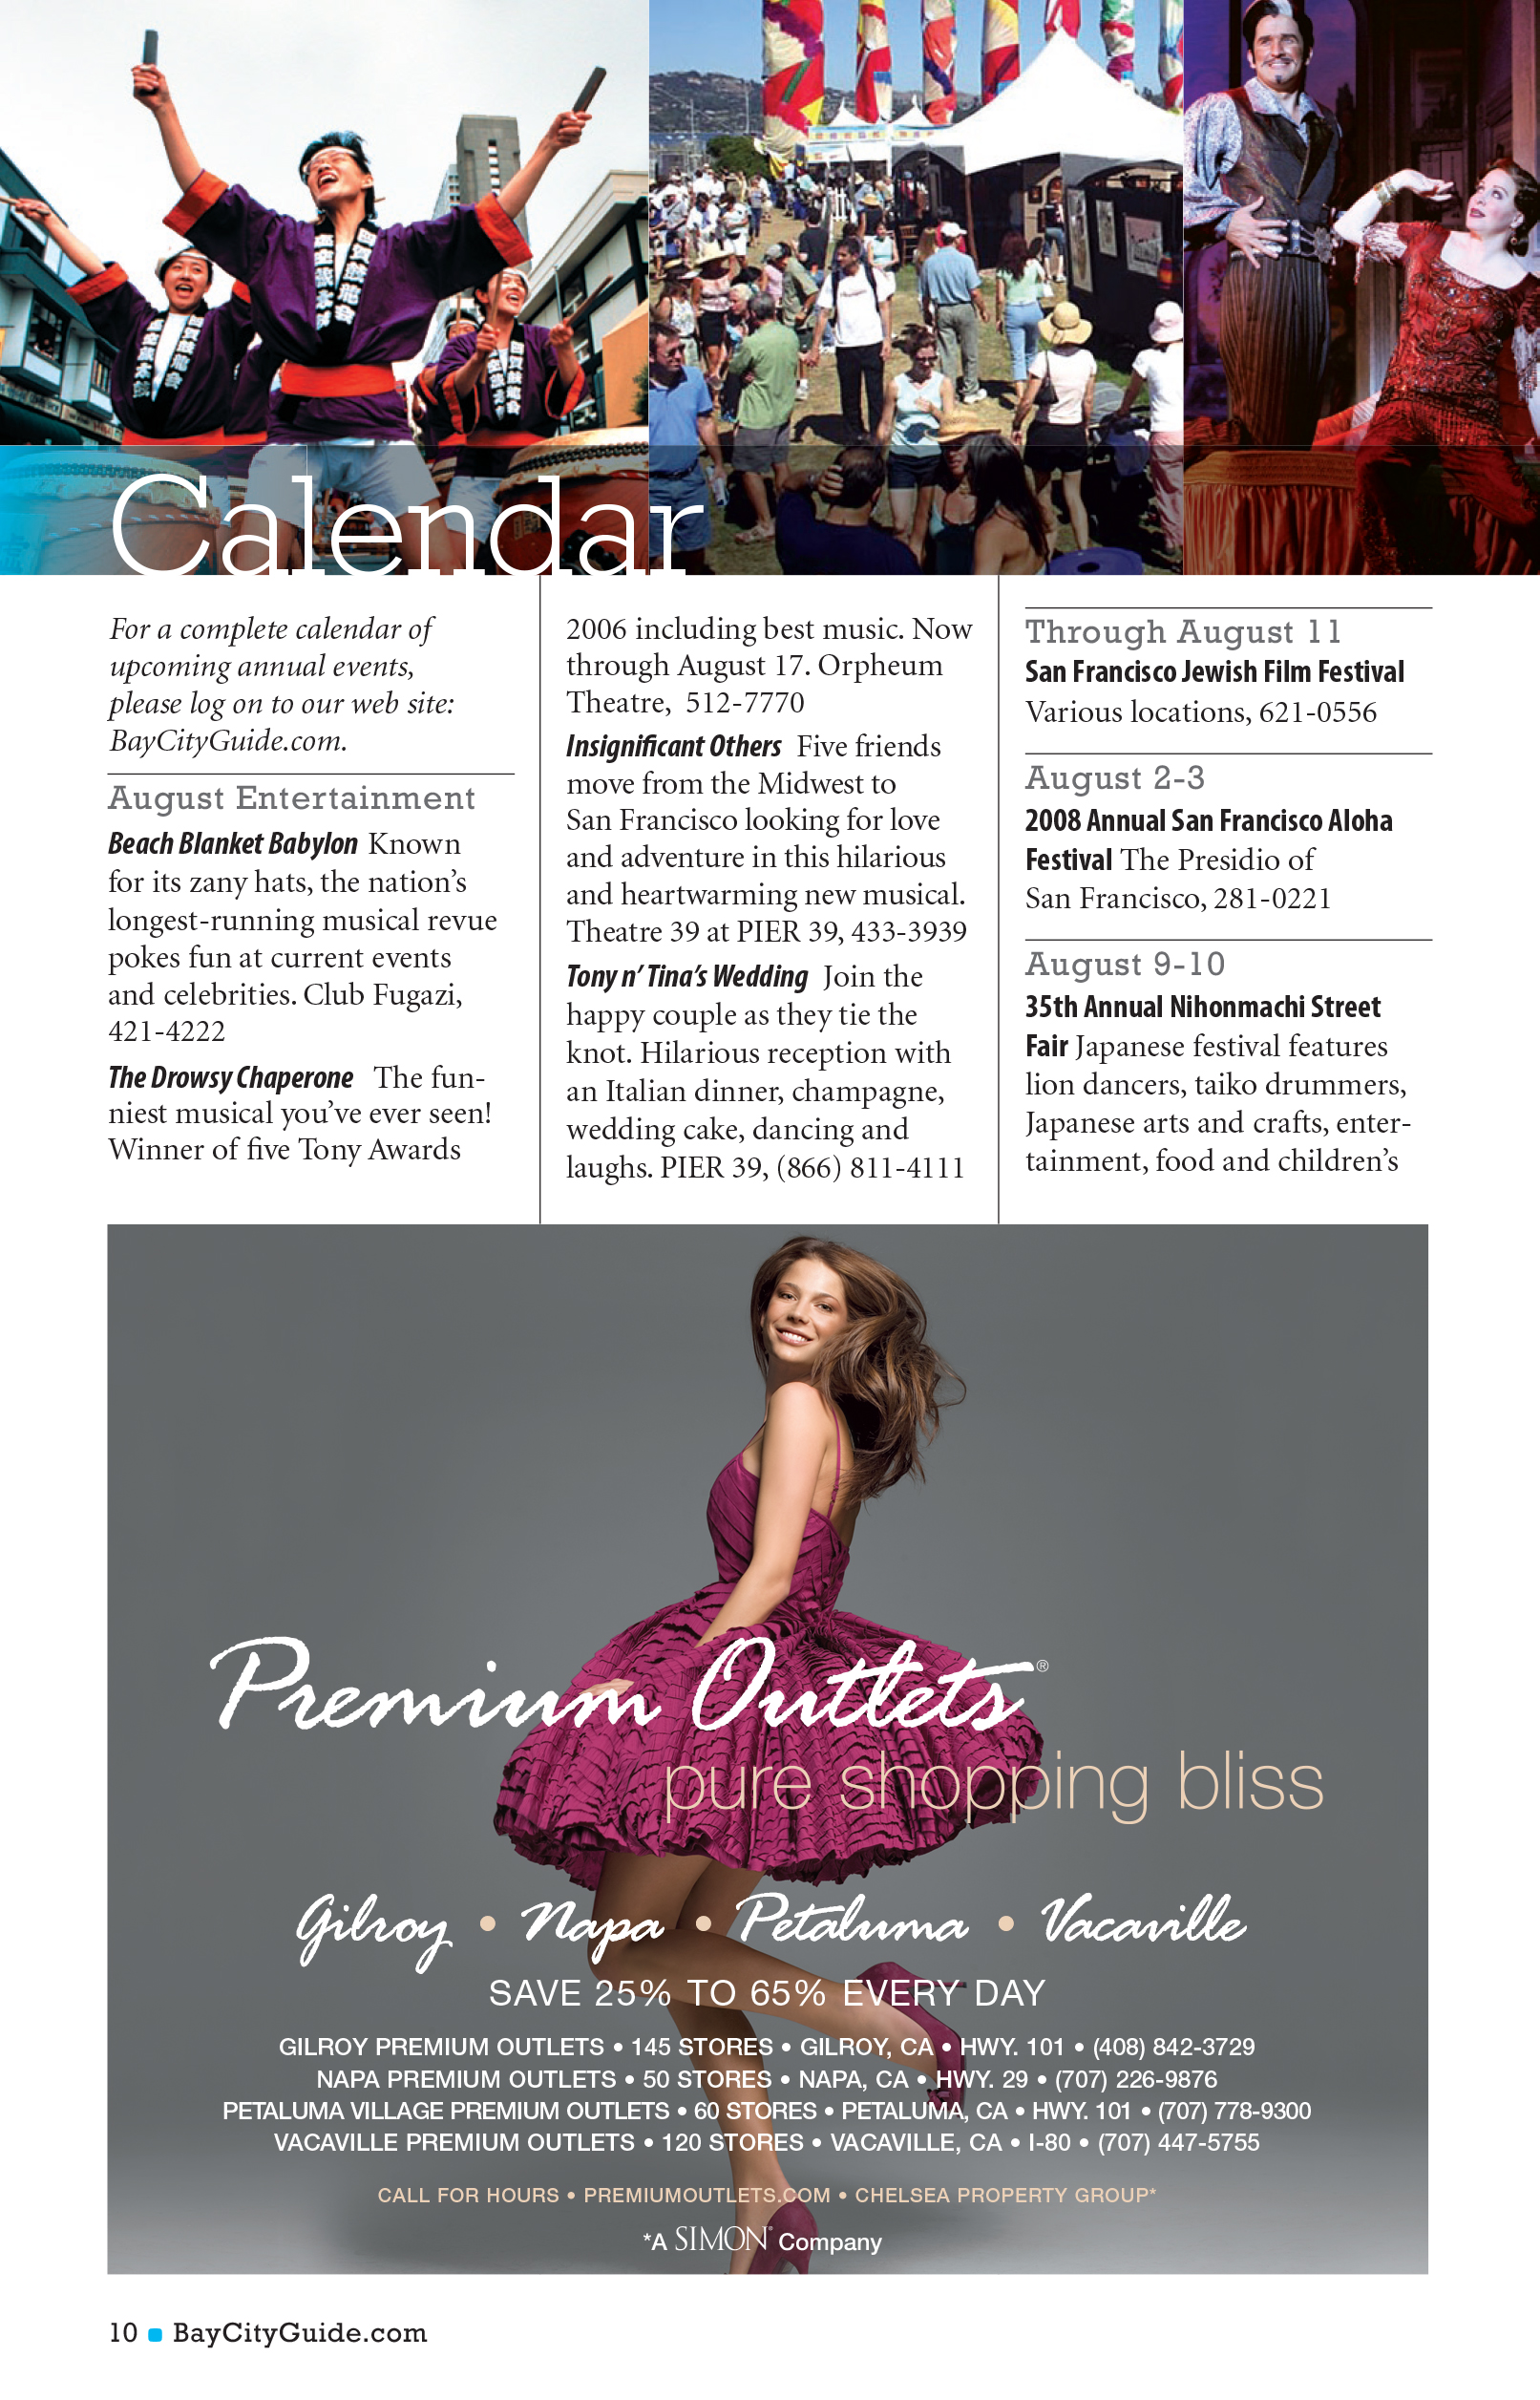 Bay City Guide magazine - Calendar